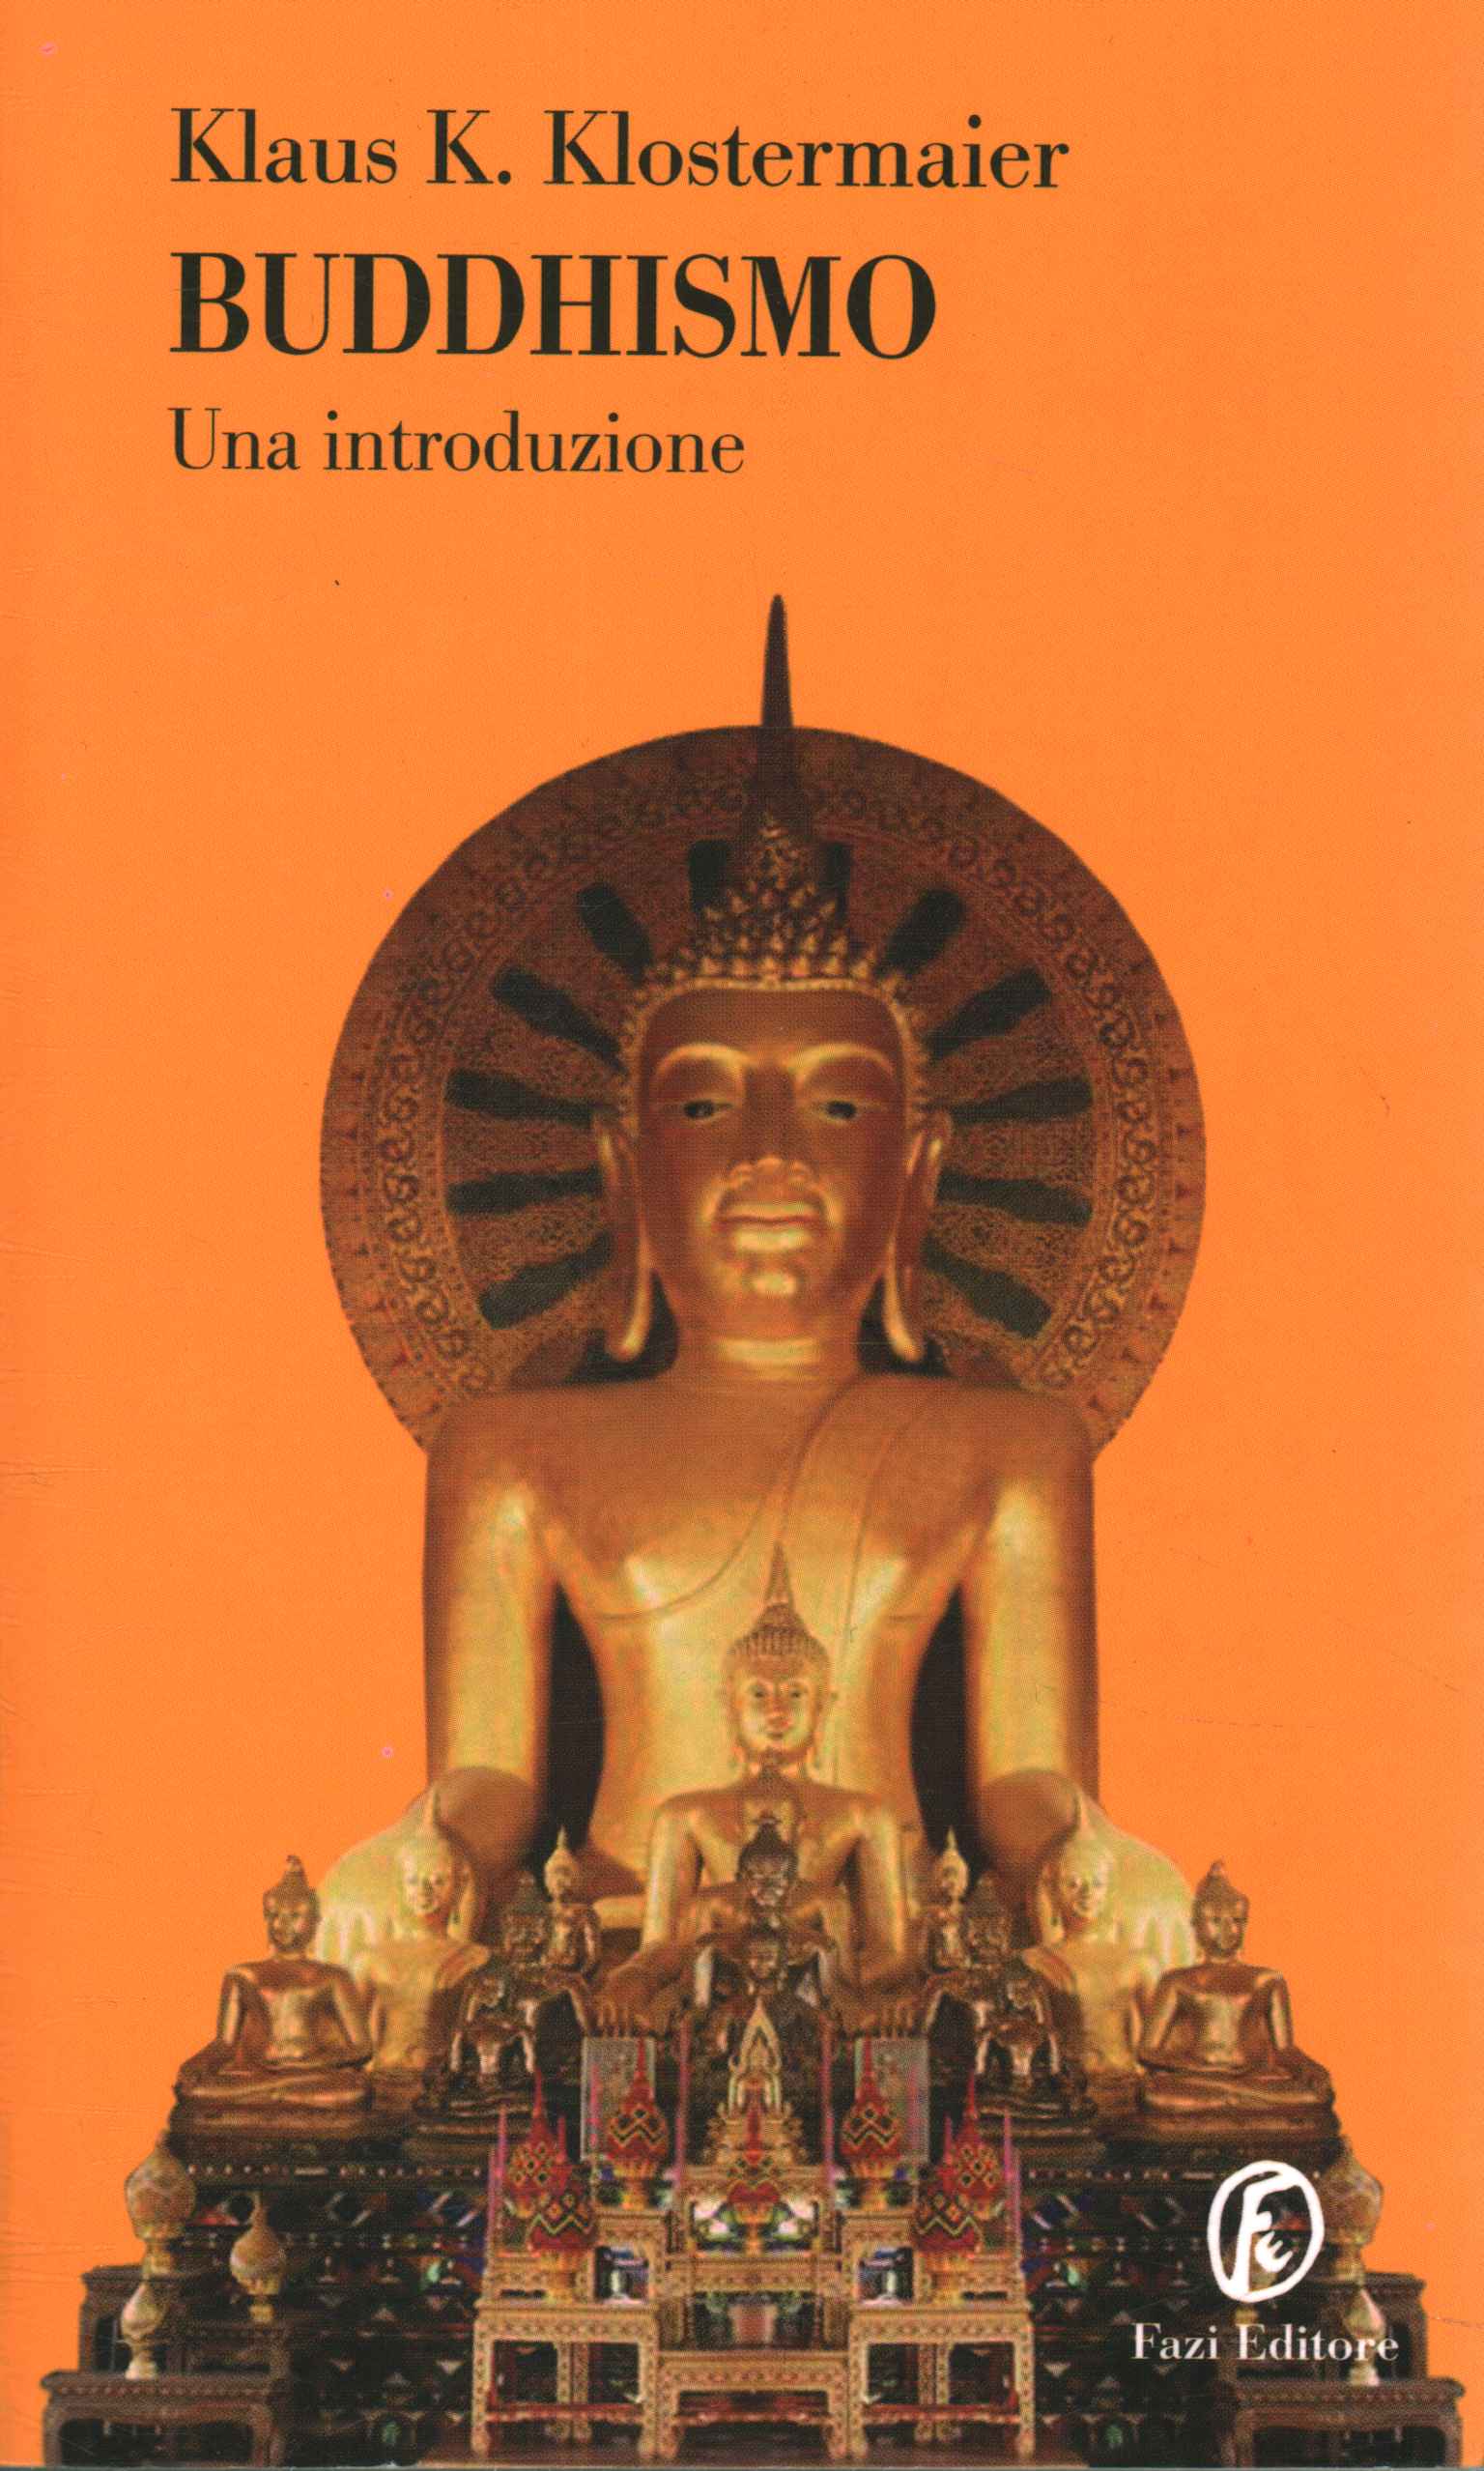 Buddhismus. Eine Einleitung